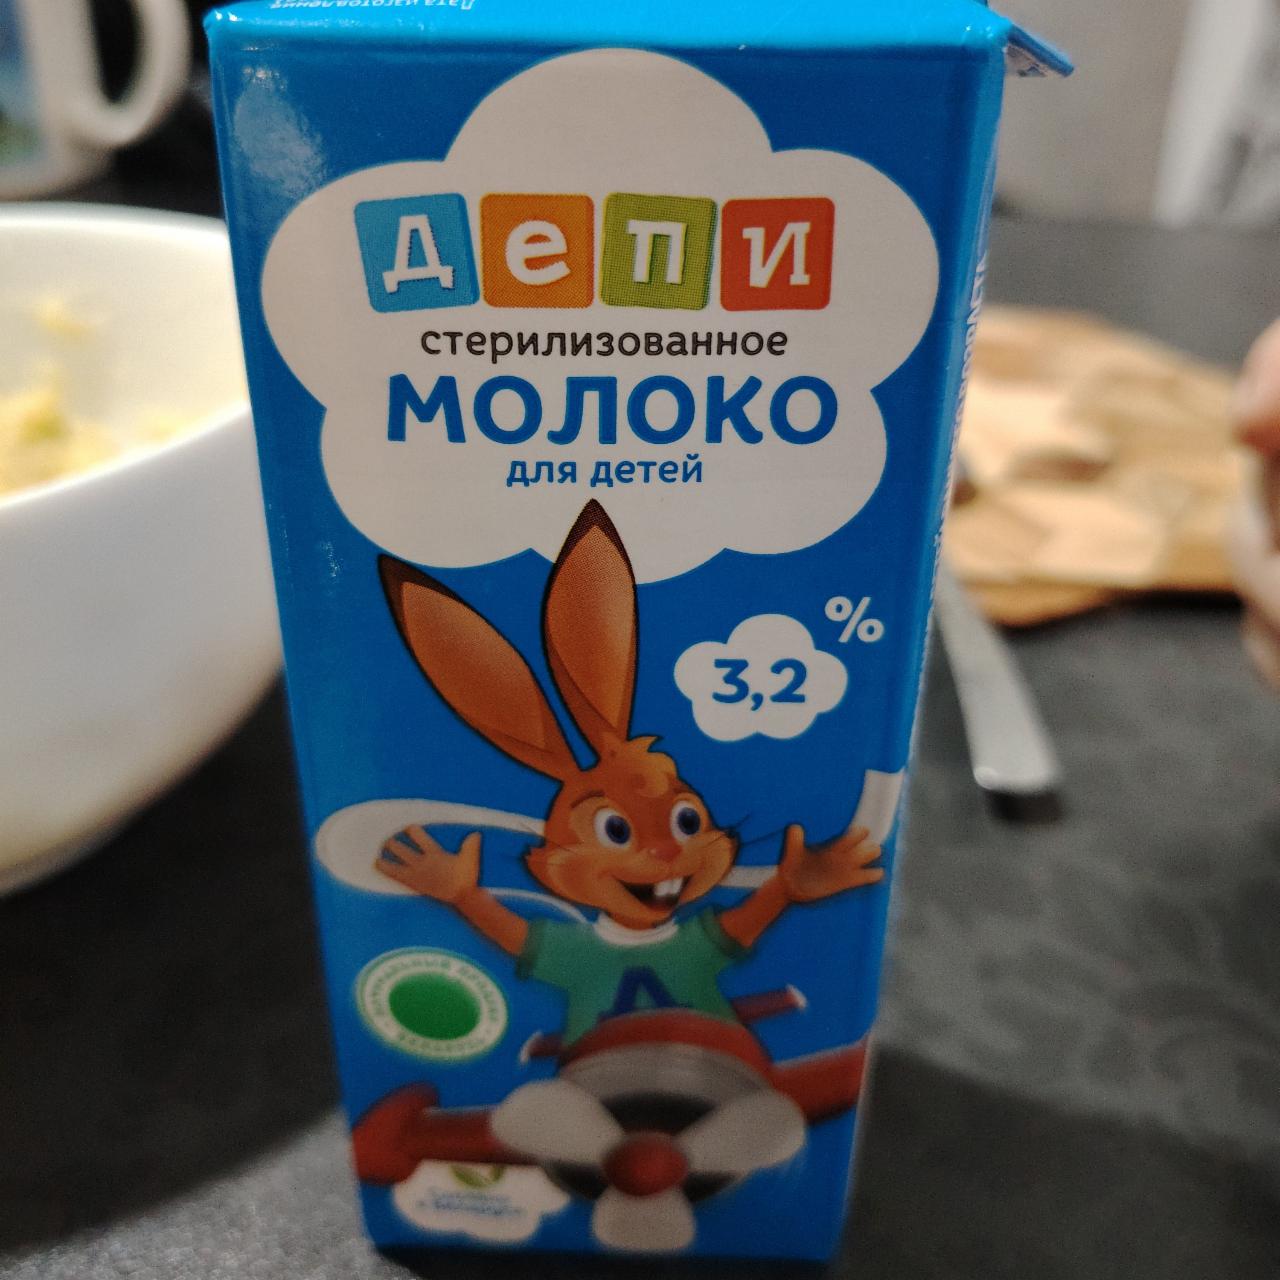 Фото - молоко для детей Депи